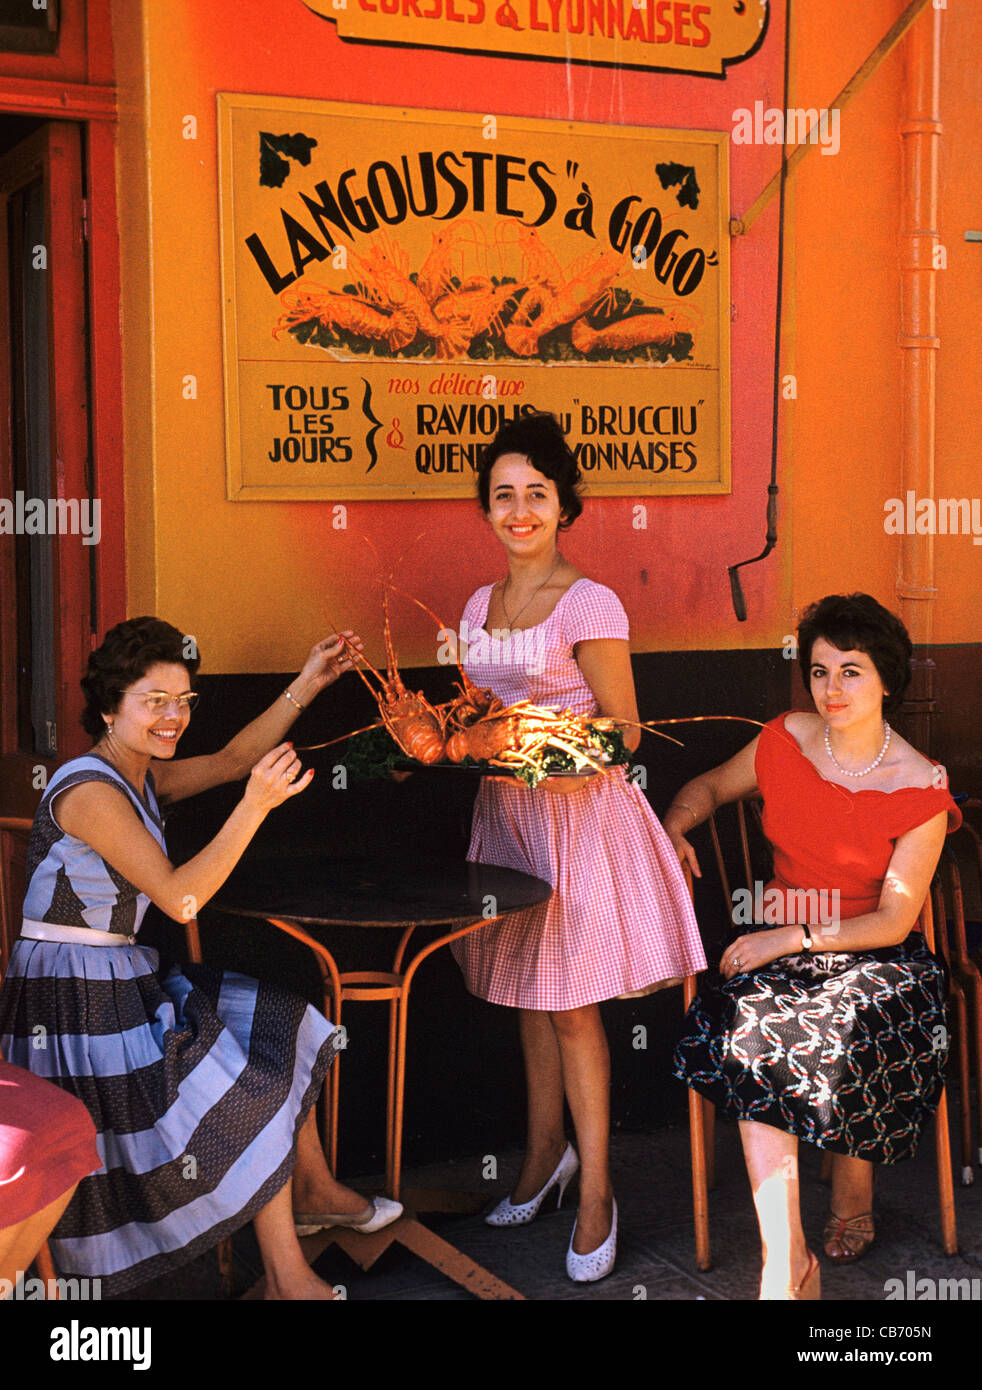 Französische Frauen der 1950er Jahre oder Anfang der 1960er Jahre im Außenbereich ein Seafood Restaurant spezialisiert auf Hummer, Porto-Vecchio, Korsika, Frankreich Stockfoto